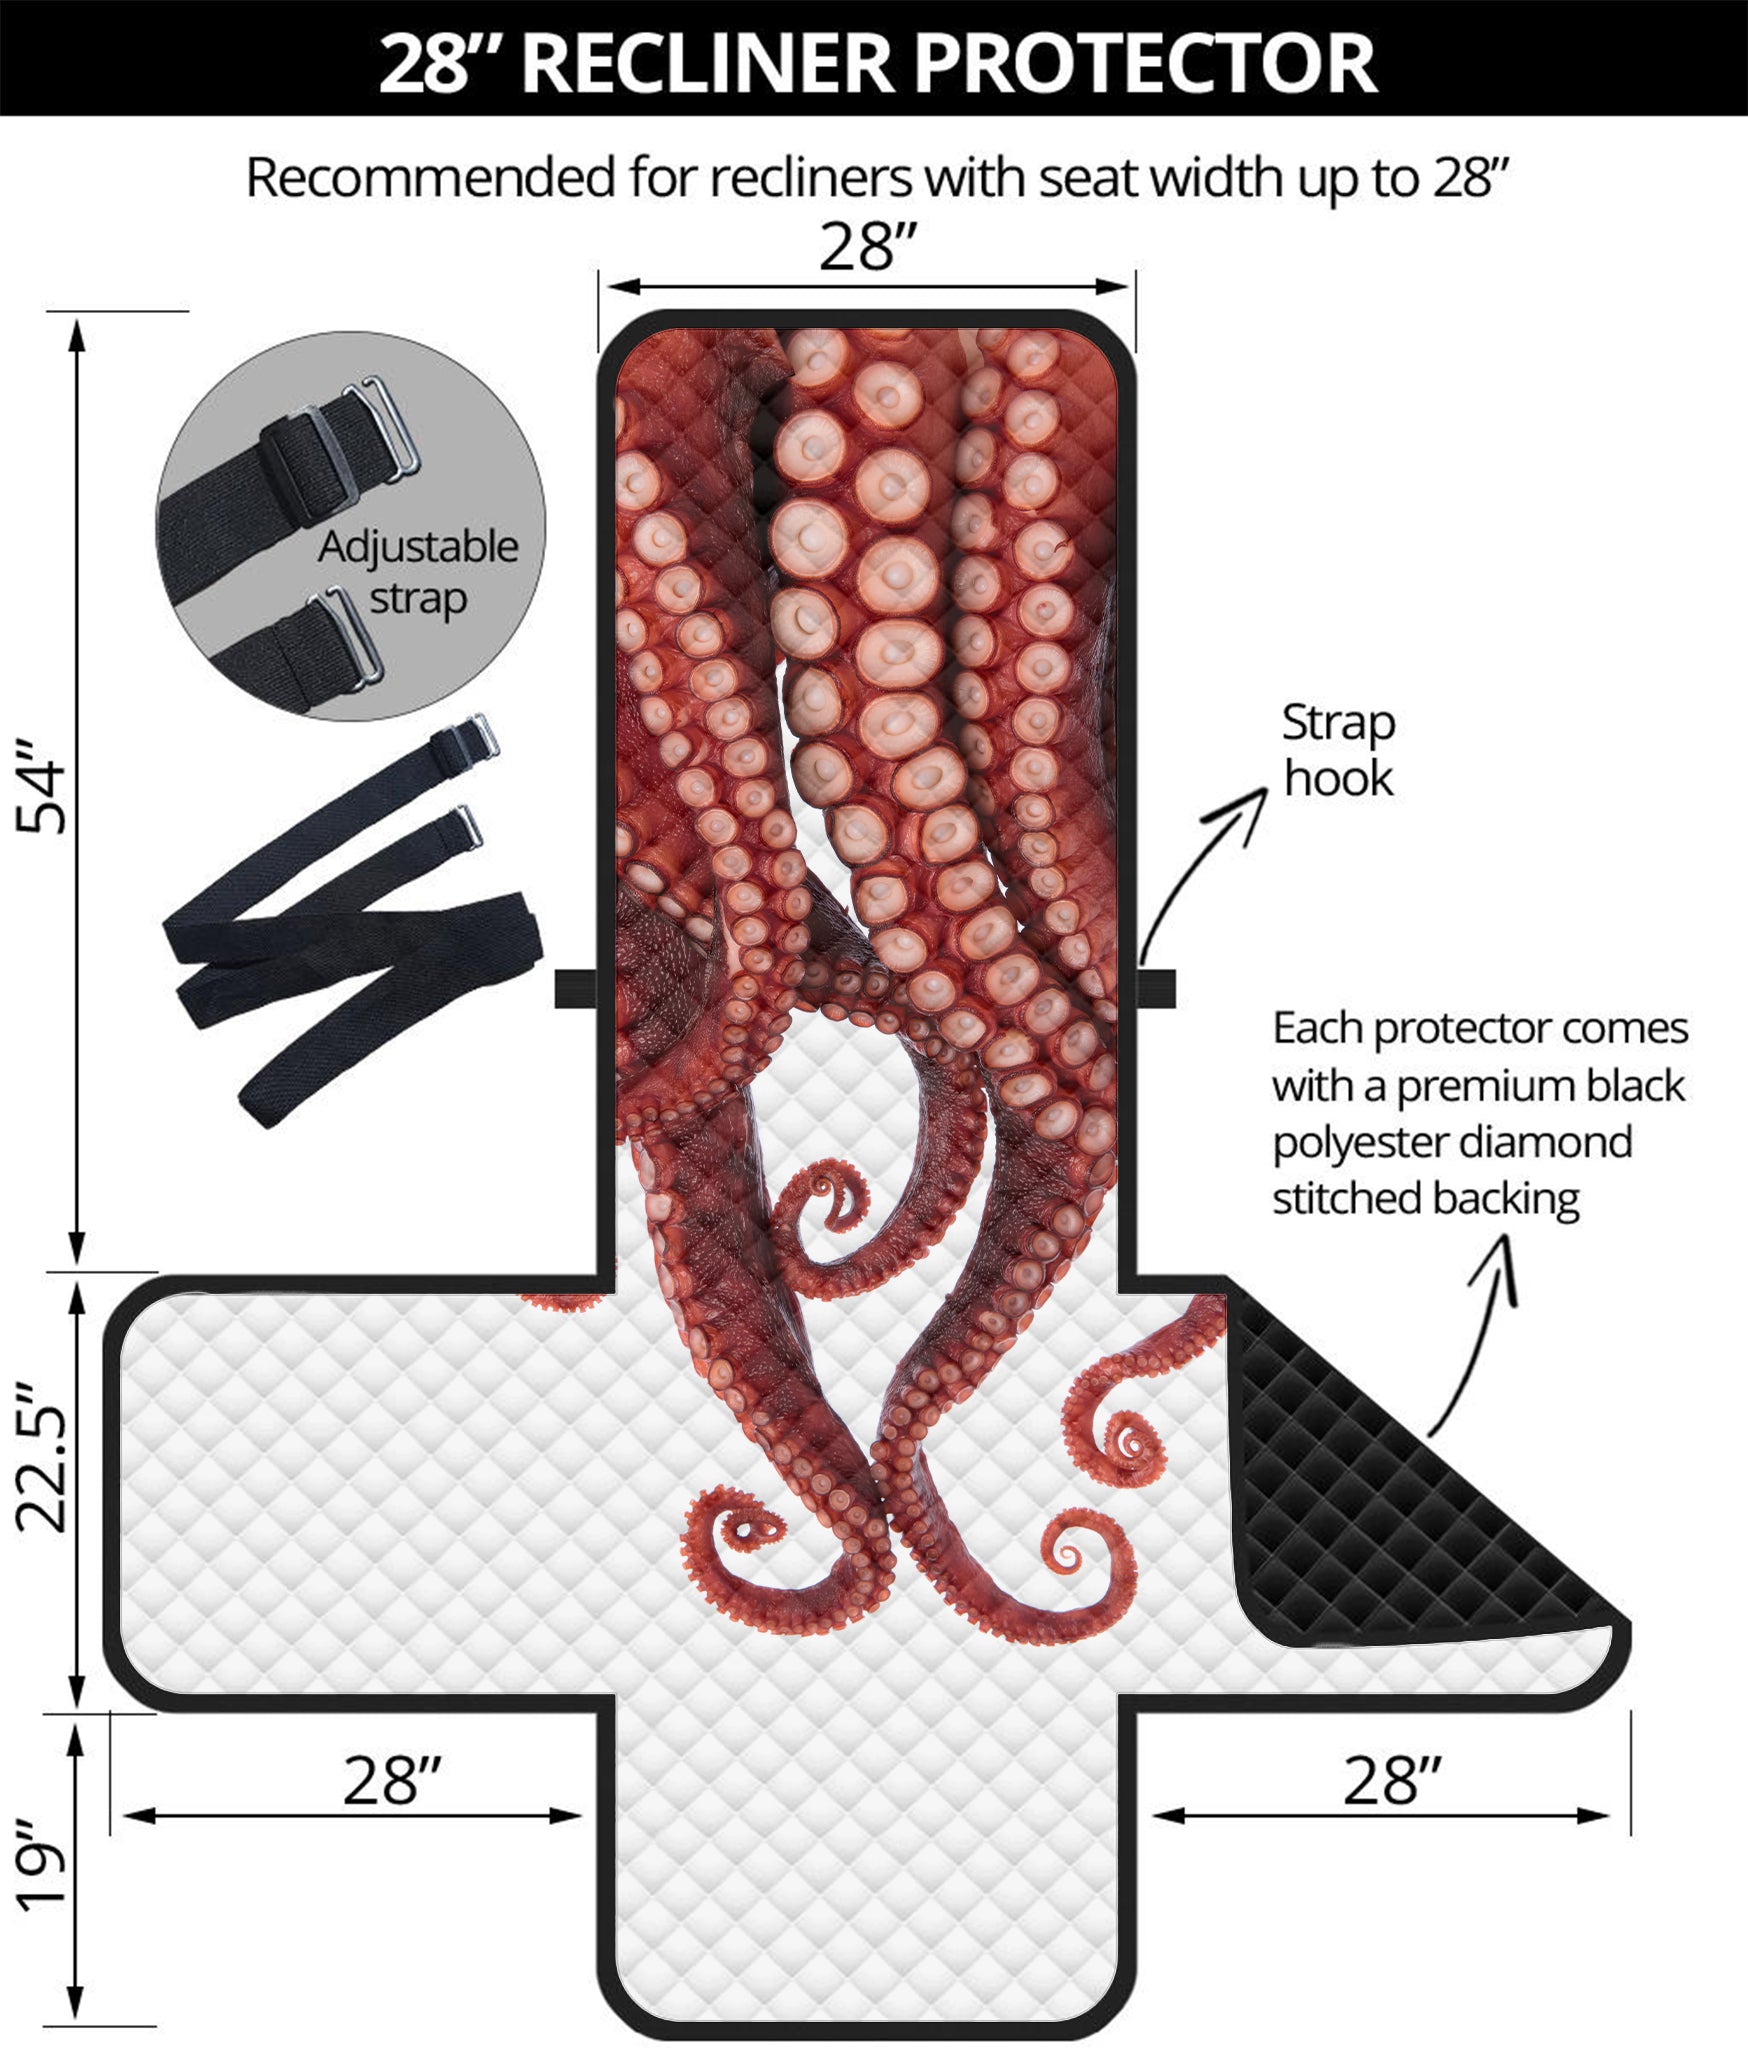 Octopus Tentacles Print Recliner Protector